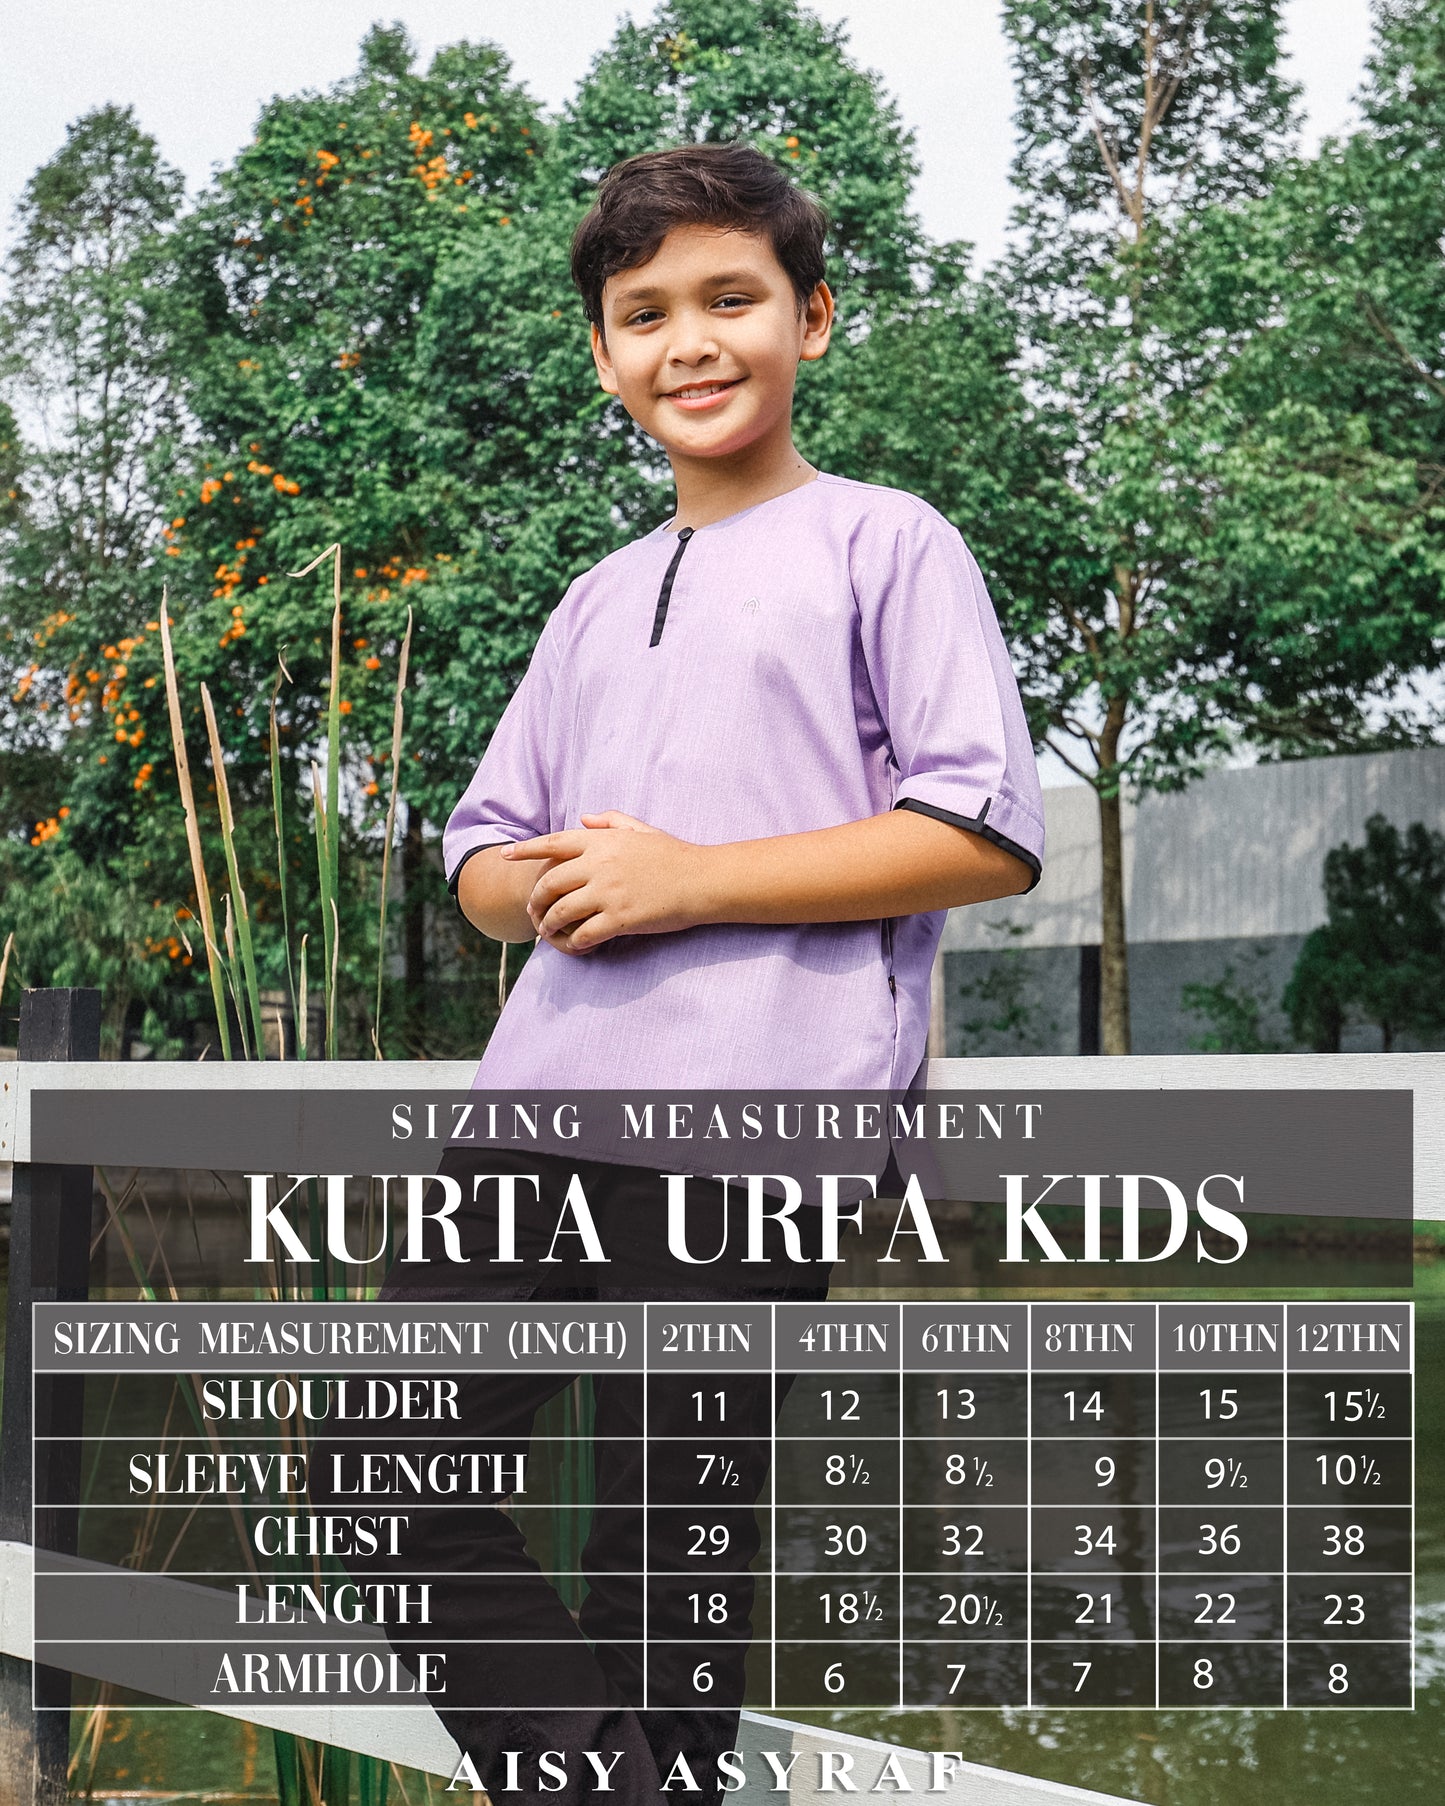 Kurta Urfa Kids - Rose Pink